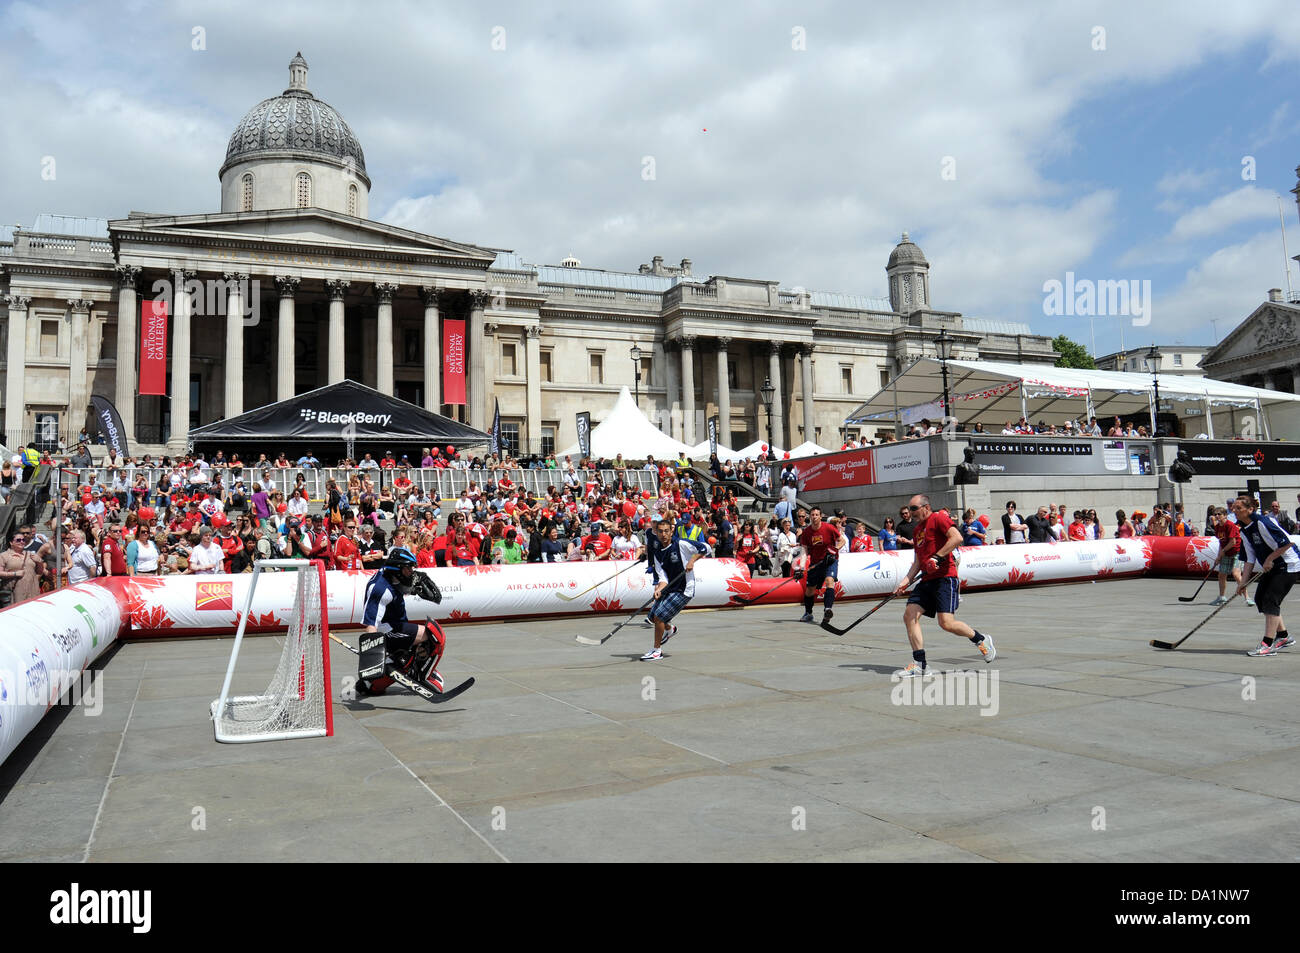 Londres, Royaume-Uni. 1er juillet 2013. Une partie de hockey sur glace se joue sur la chaussée de pierre de Trafalgar Square, Londres, Angleterre, pendant les festivités de la fête du Canada le 1er juillet 2013, International. Crédit : Jamie Gray/Alamy Live News Banque D'Images